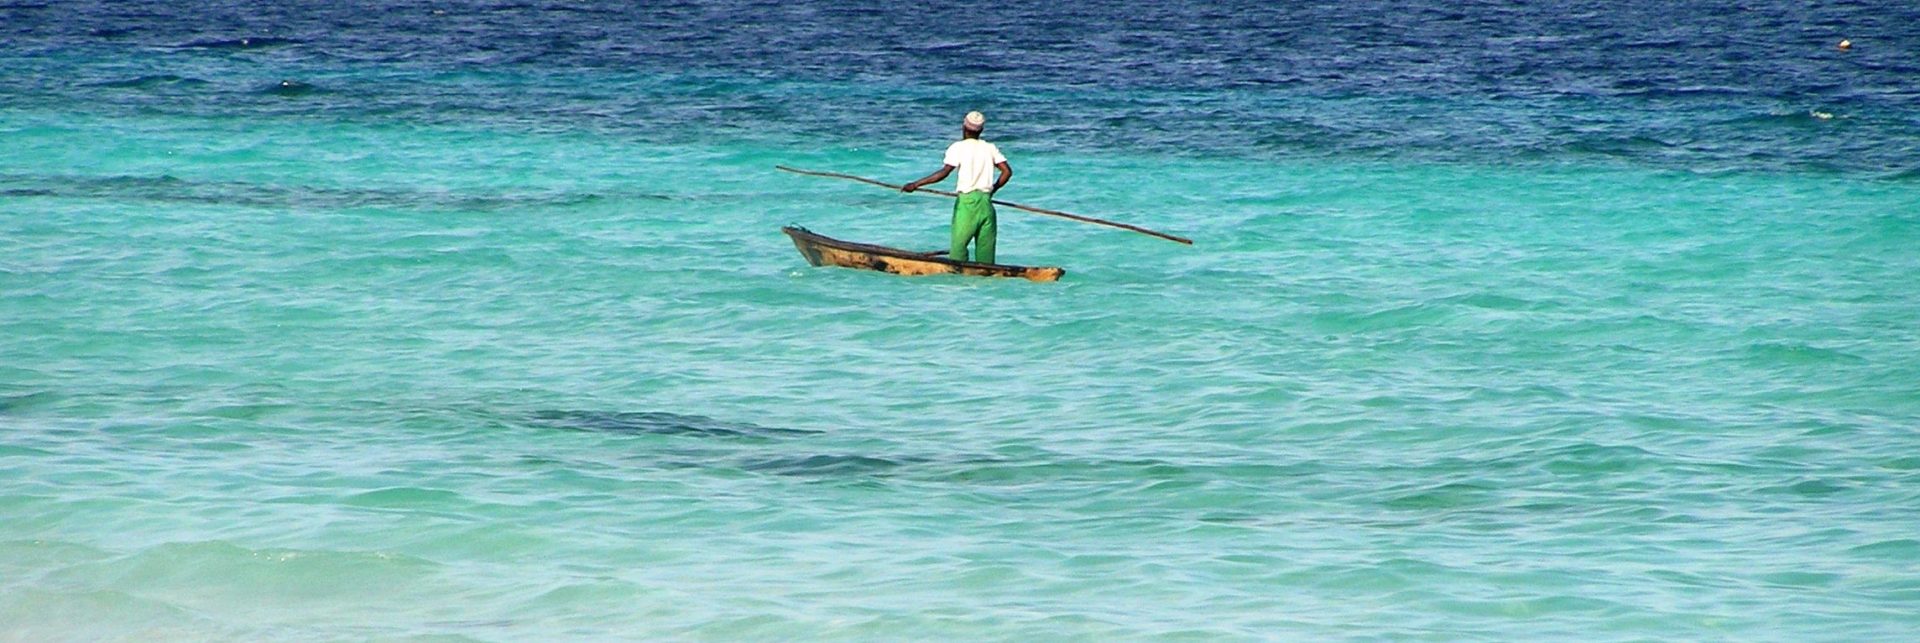 Zanzibar boat